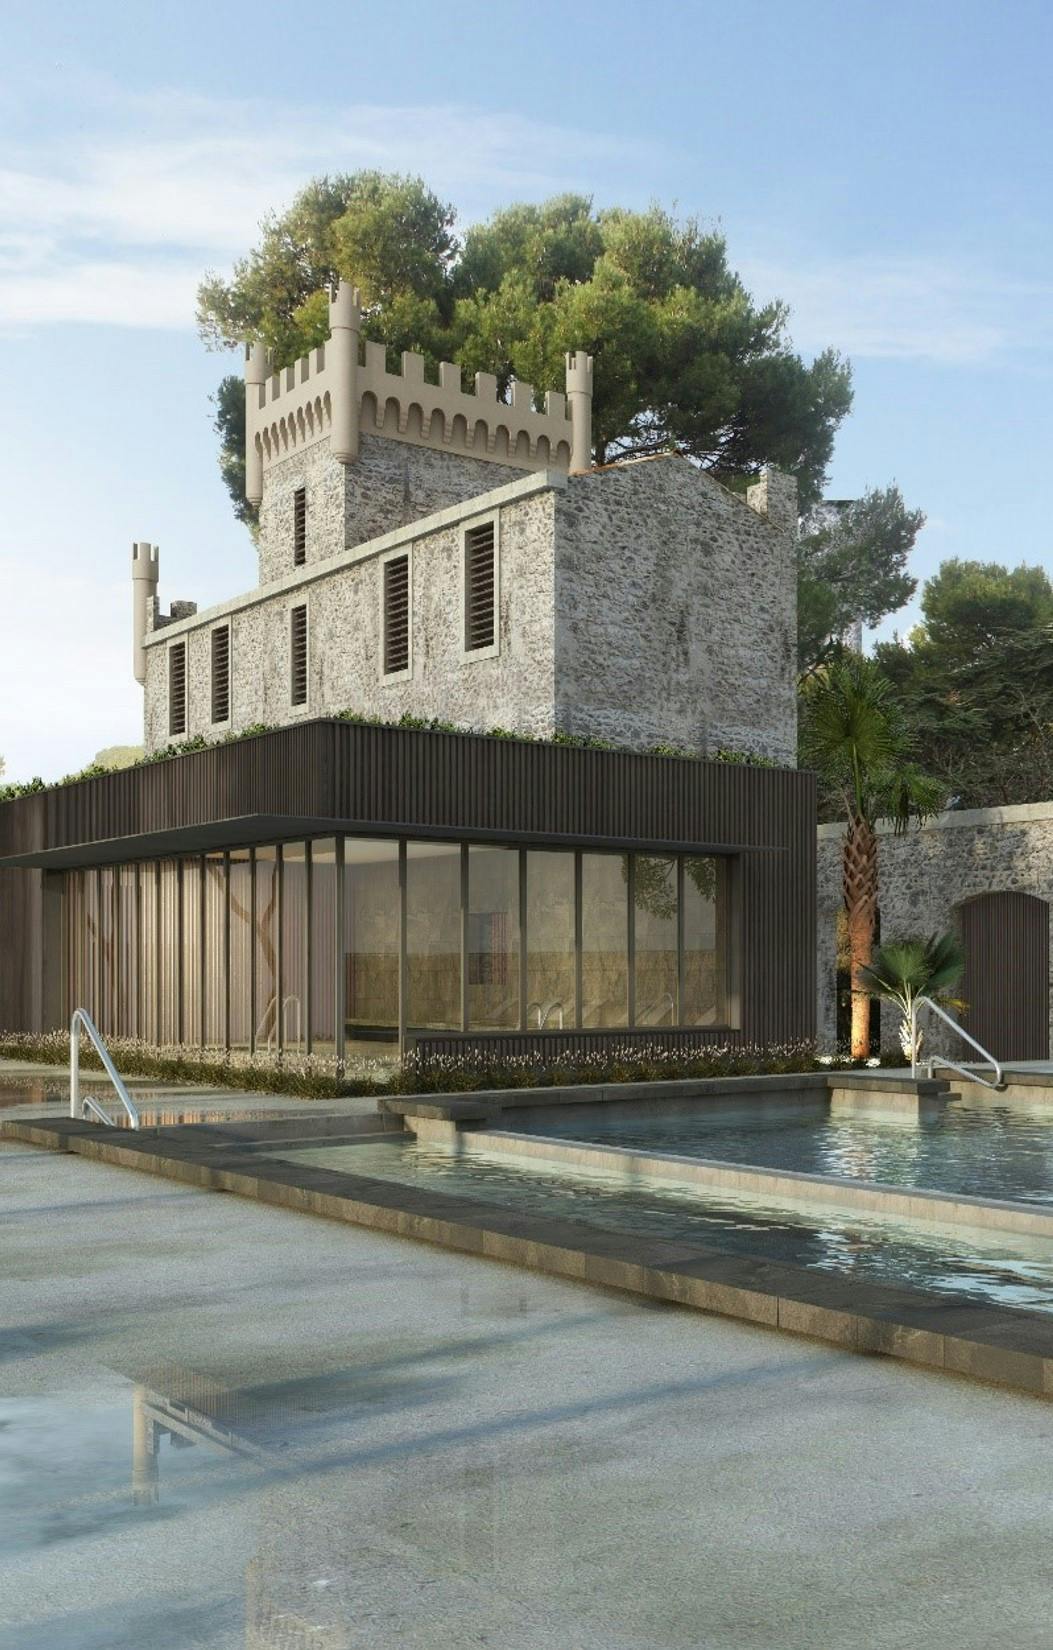 Photographie illustrant le projet d'investissement immobilier Château de Batipaume - Agde.